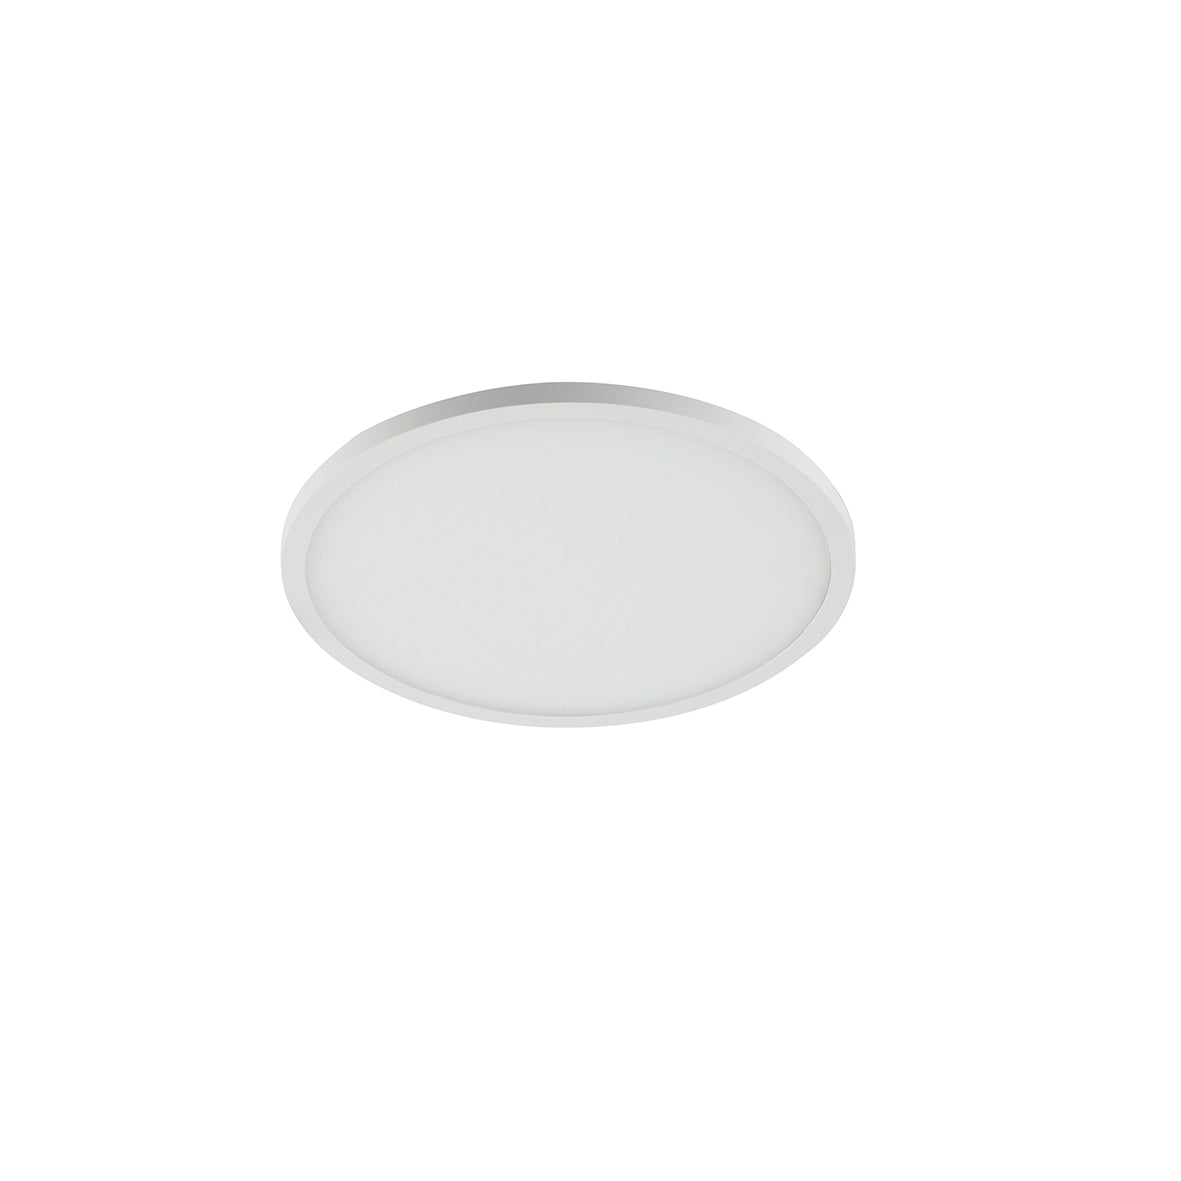 Luminaire encastré LED PLUS en aluminium blanc mat et bord effet plafonnier